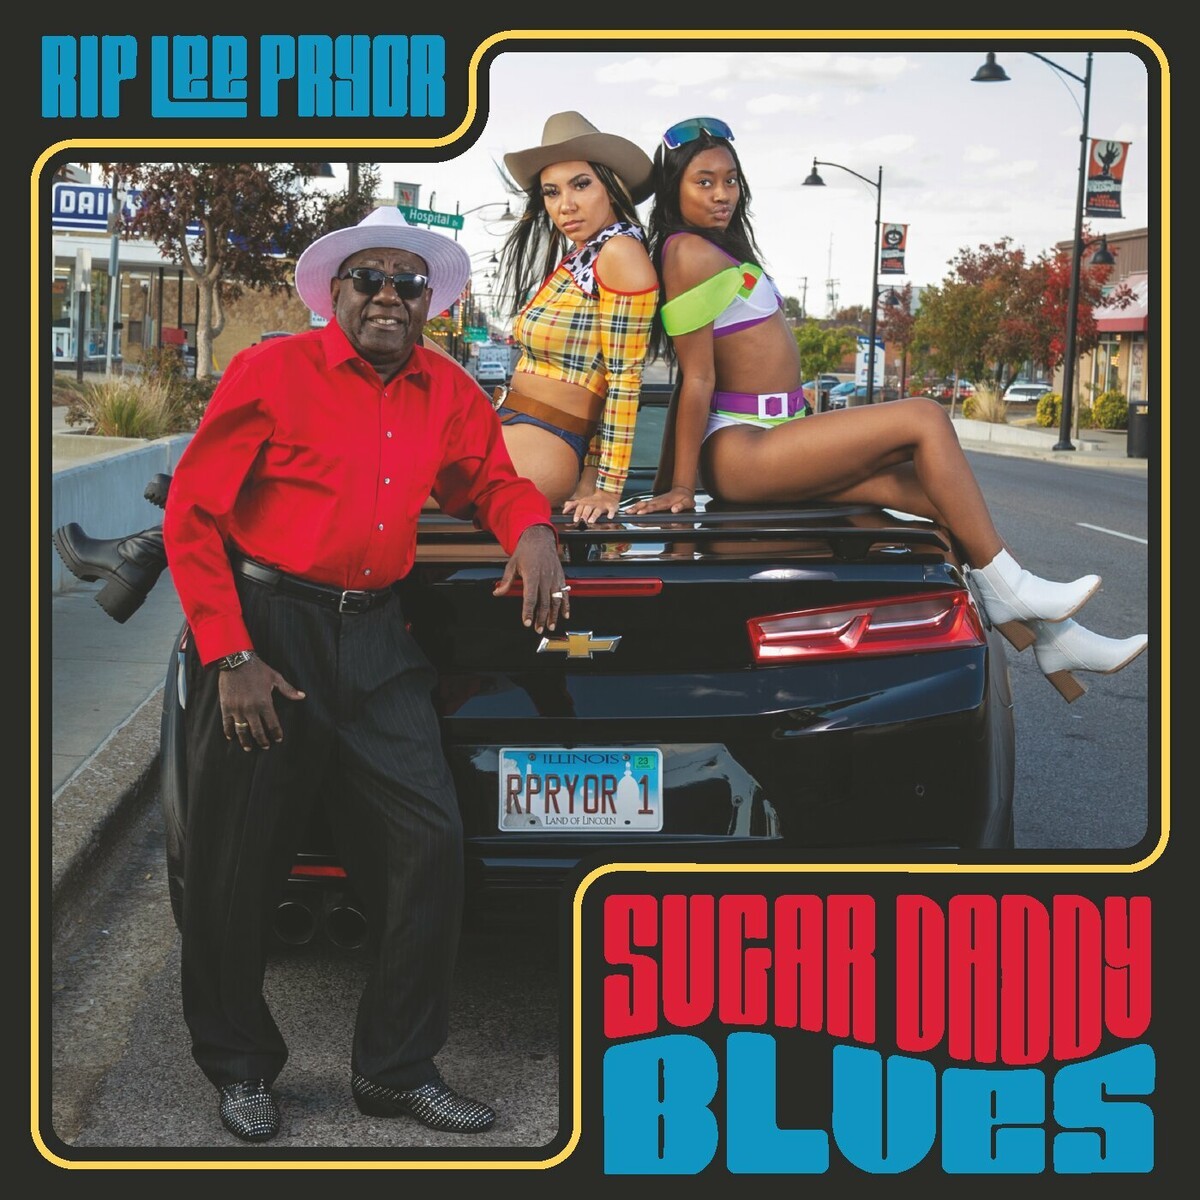 Rip Lee Pryor - Sugar Daddy Blues